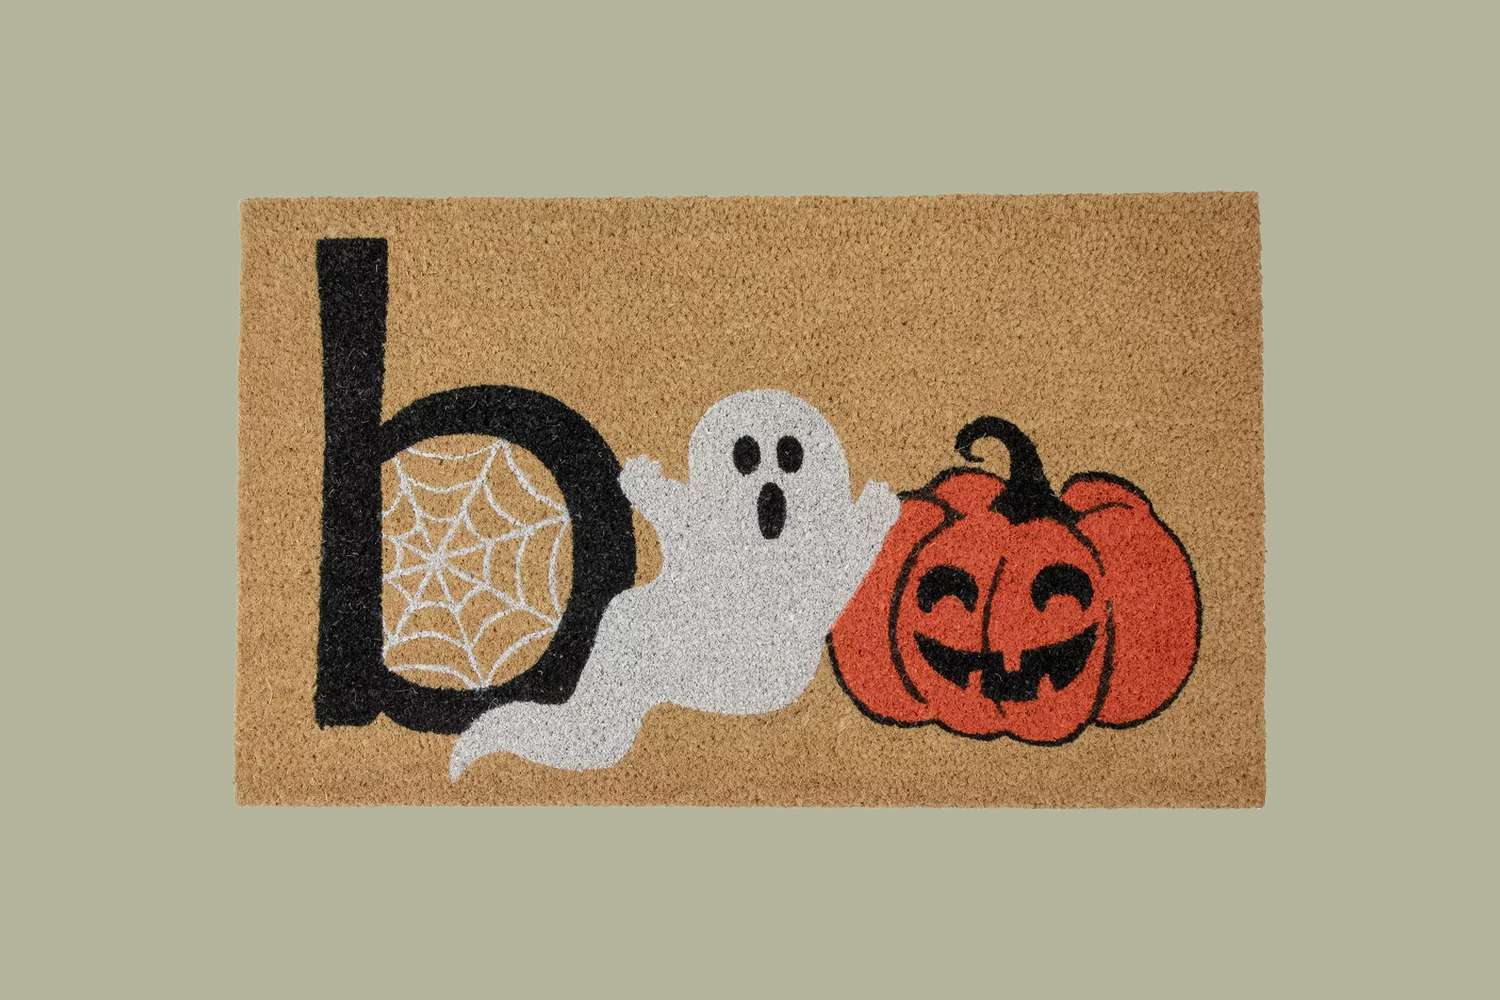 Target "Boo" Halloween Doormat